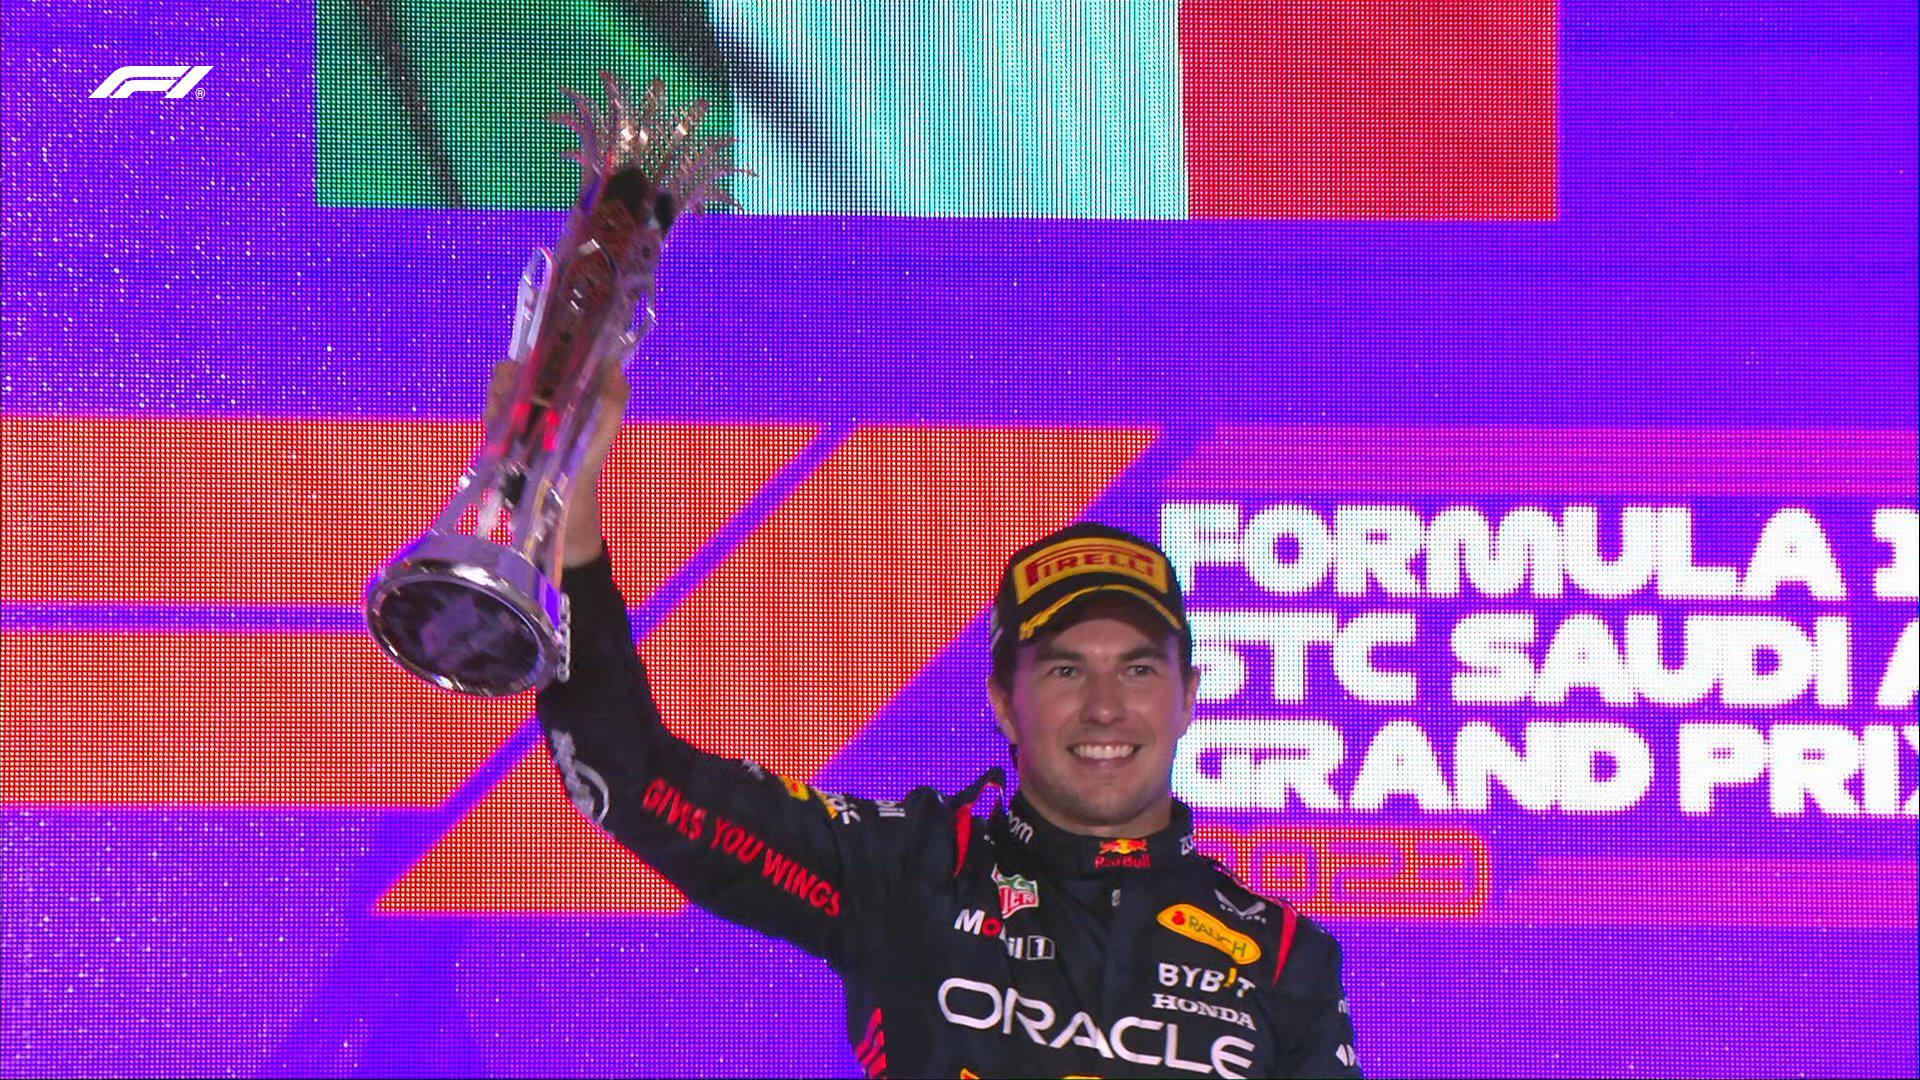 $!Checo Pérez gana el Gran Premio de Arabia Saudita